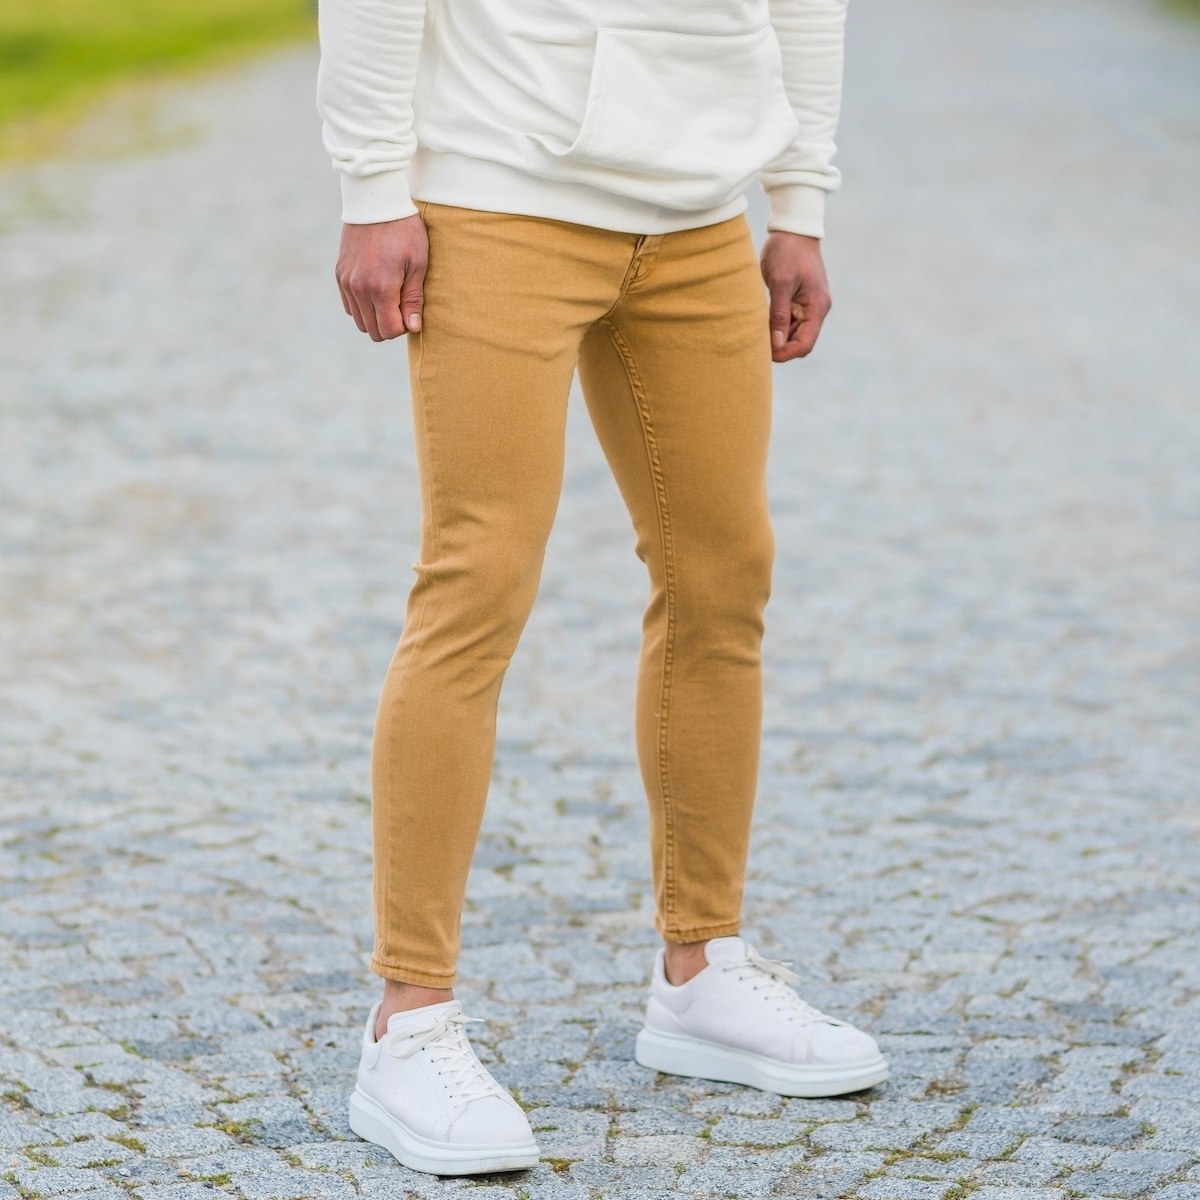 Men's Basic Skinny Jeans In Mustard